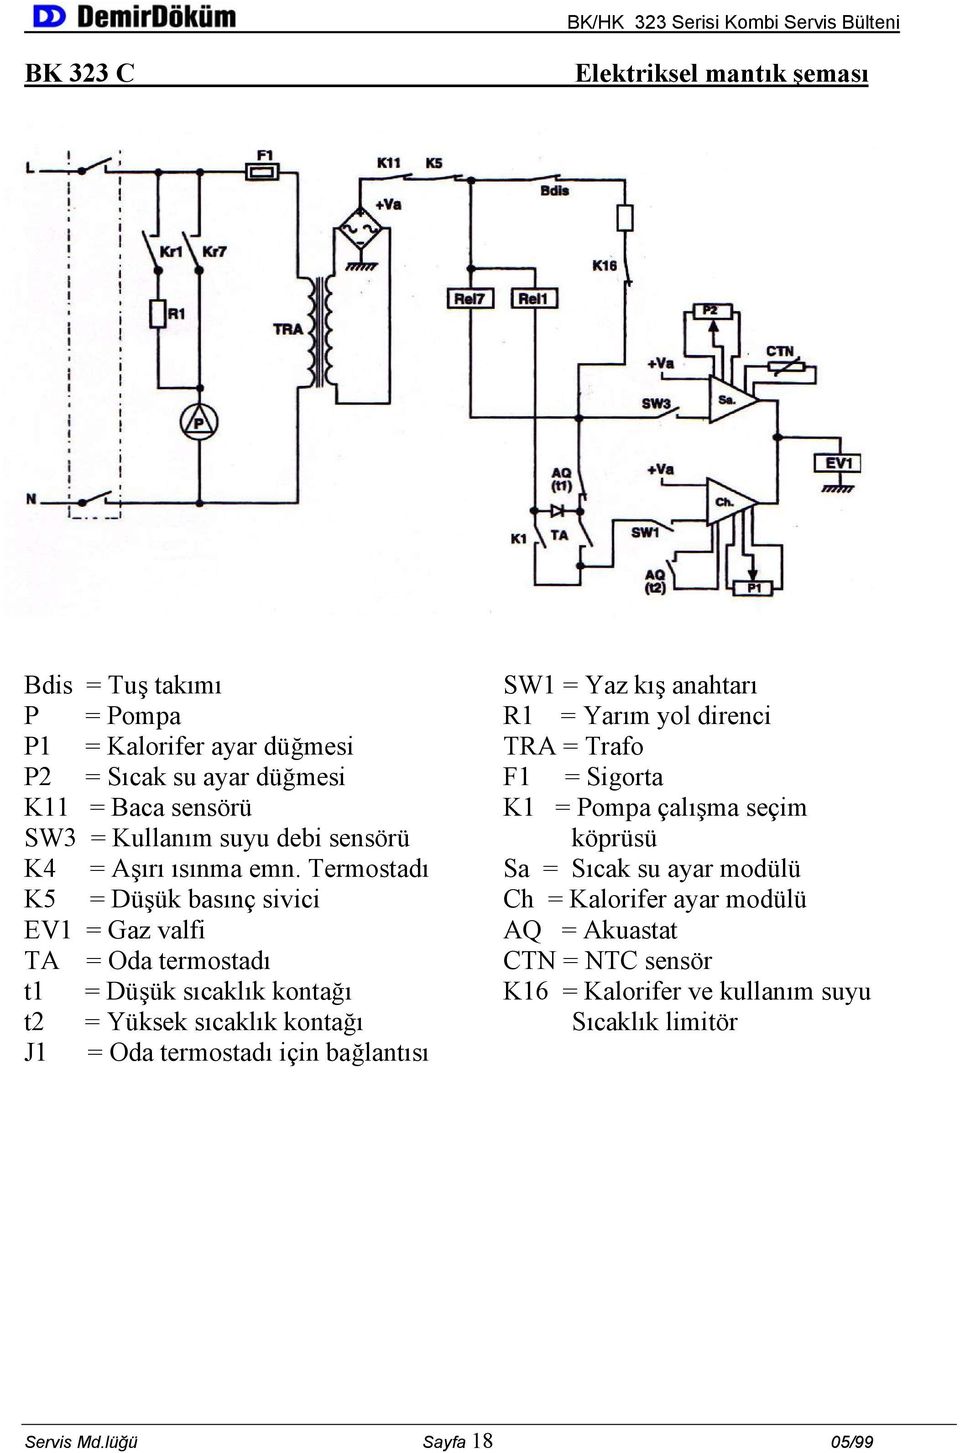 Termostadı Sa = Sıcak su ayar modülü K5 = Düşük basınç sivici Ch = Kalorifer ayar modülü EV1 = Gaz valfi AQ = Akuastat TA = Oda termostadı CTN = NTC sensör